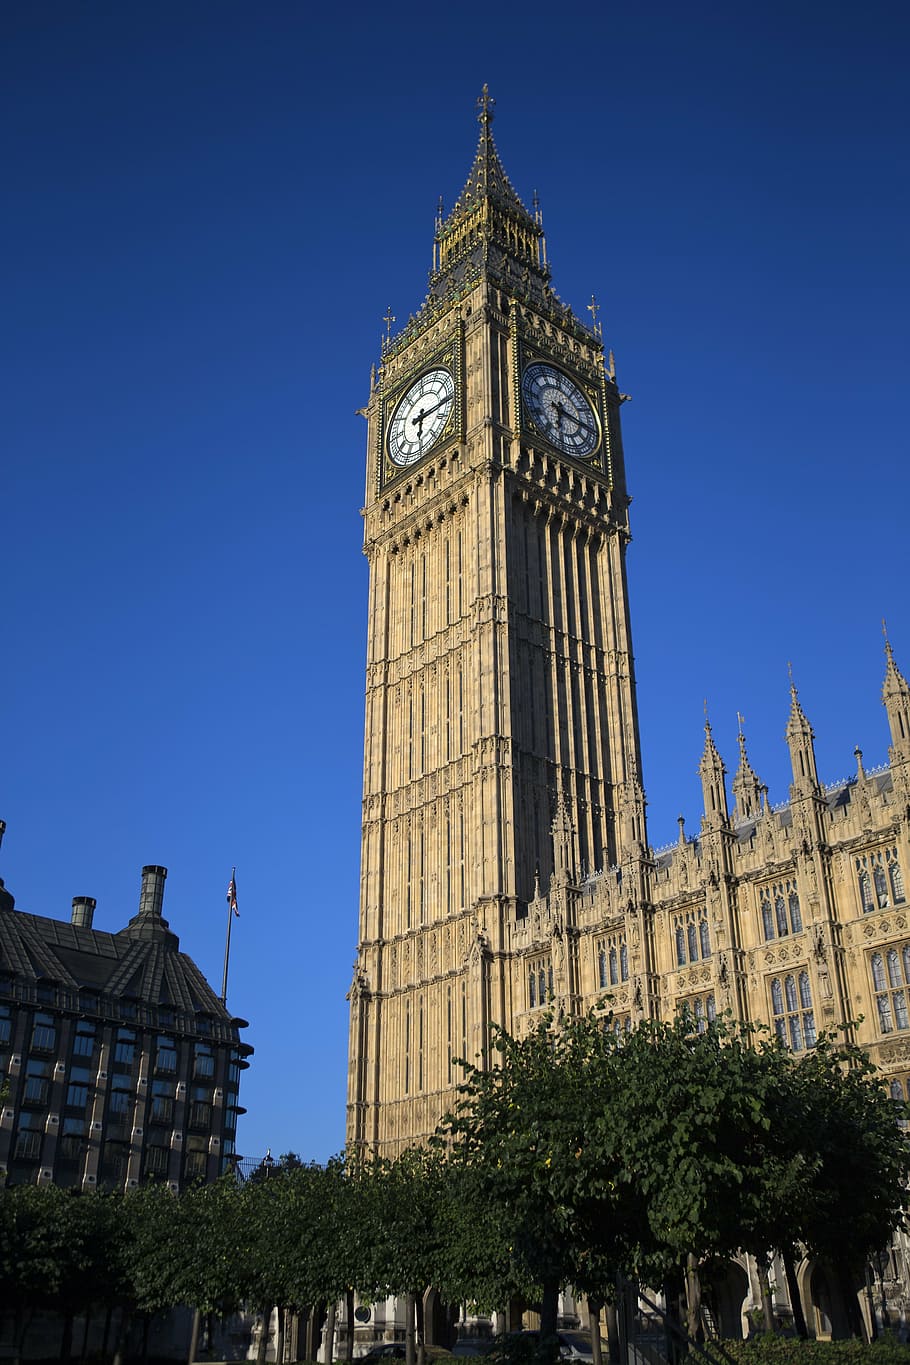 elizabeth tower, london, elizabeth tower, houses of parliament, london landmark, houses Of Parliament - London, architecture, tower, big Ben, famous Place, clock